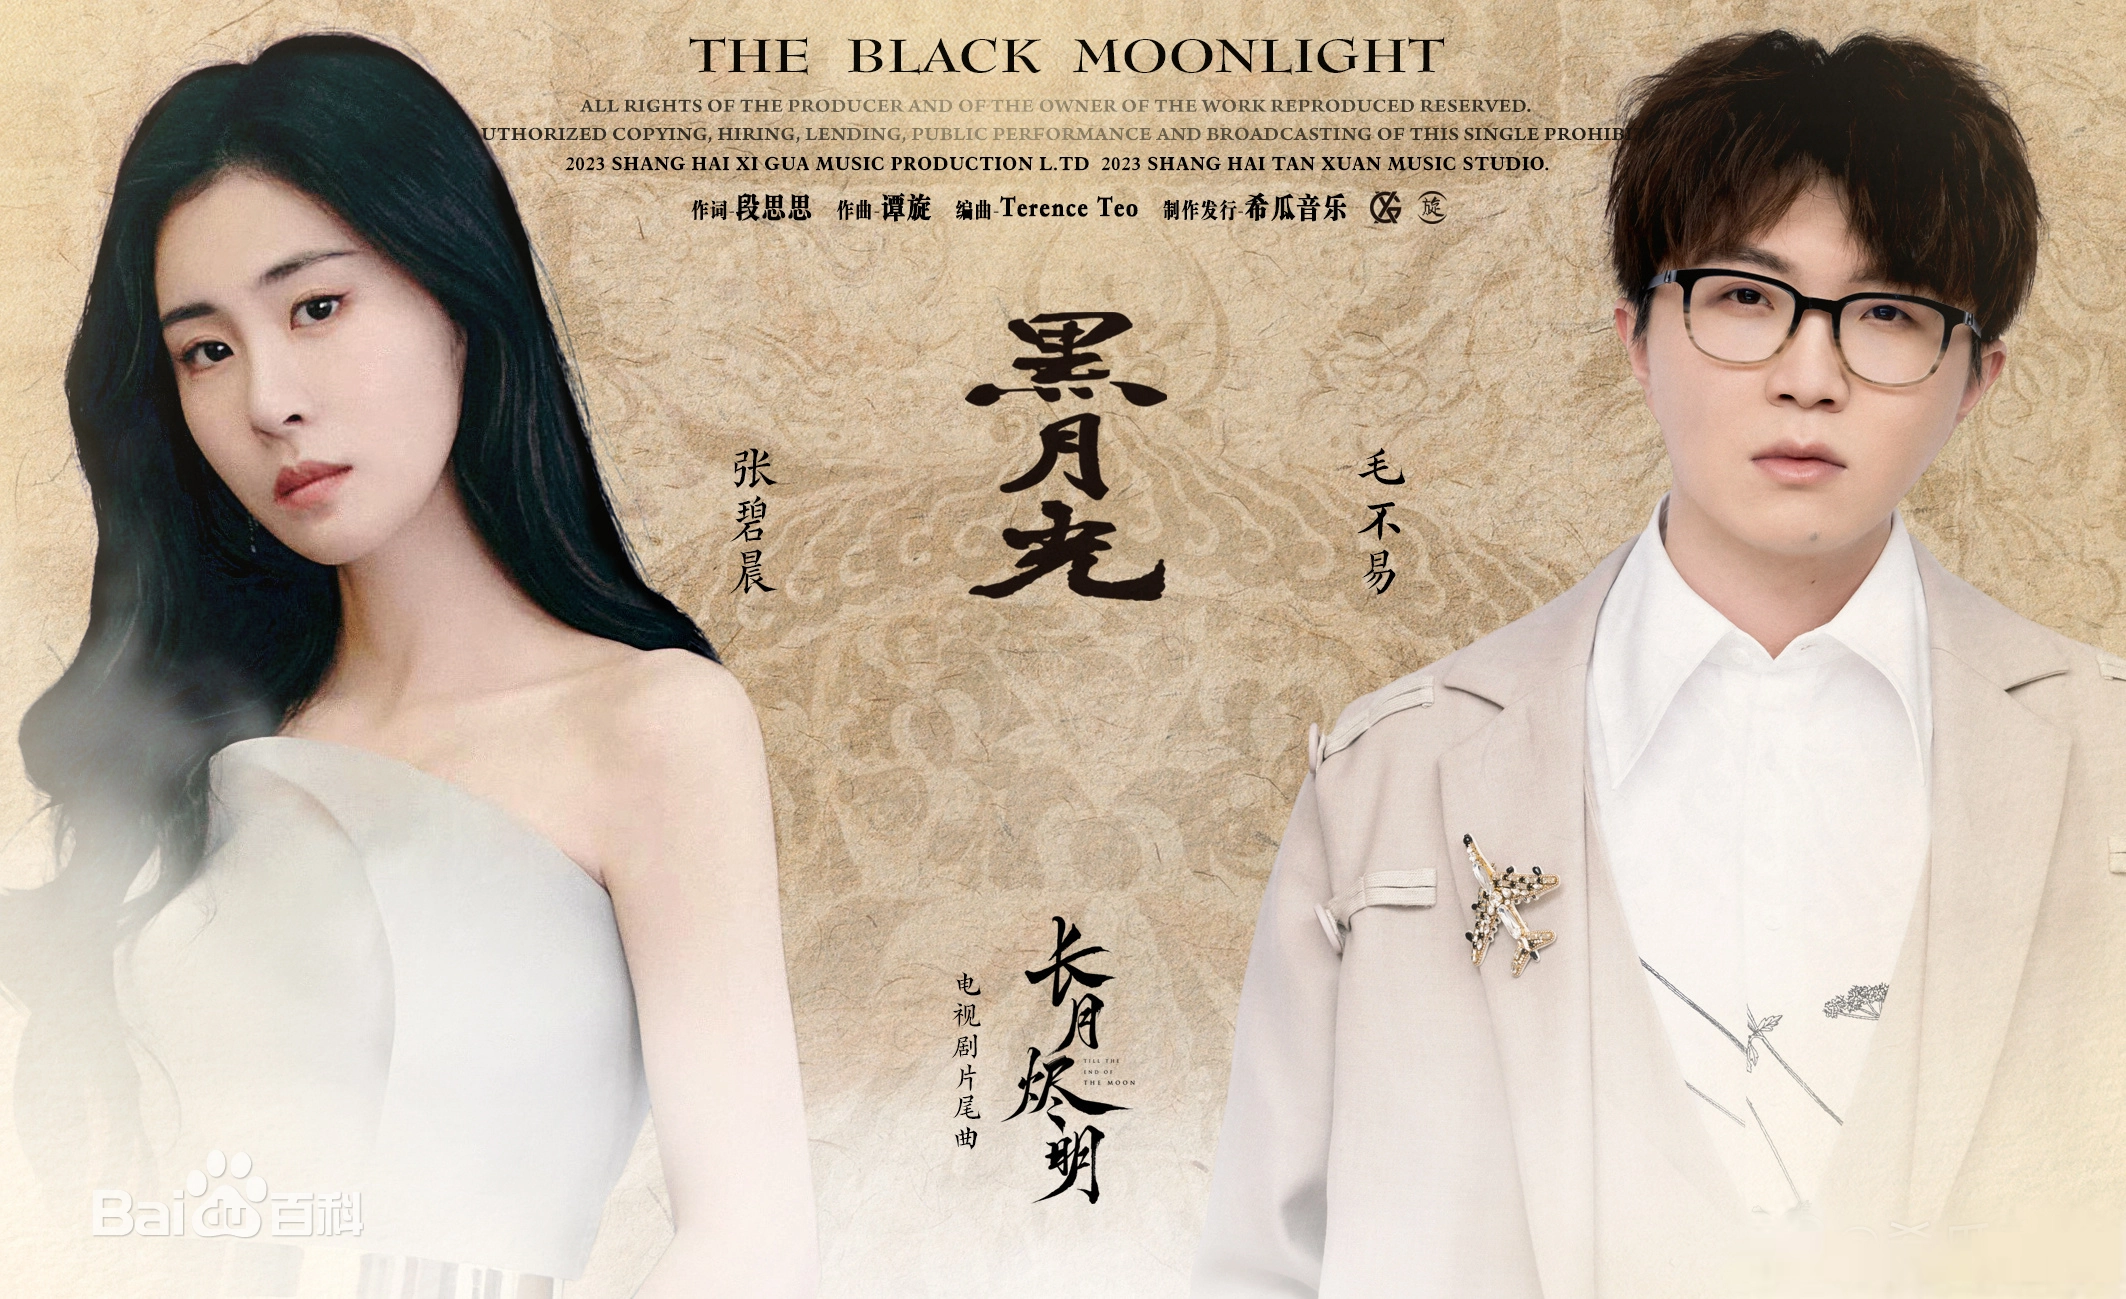 The Black Moonlight